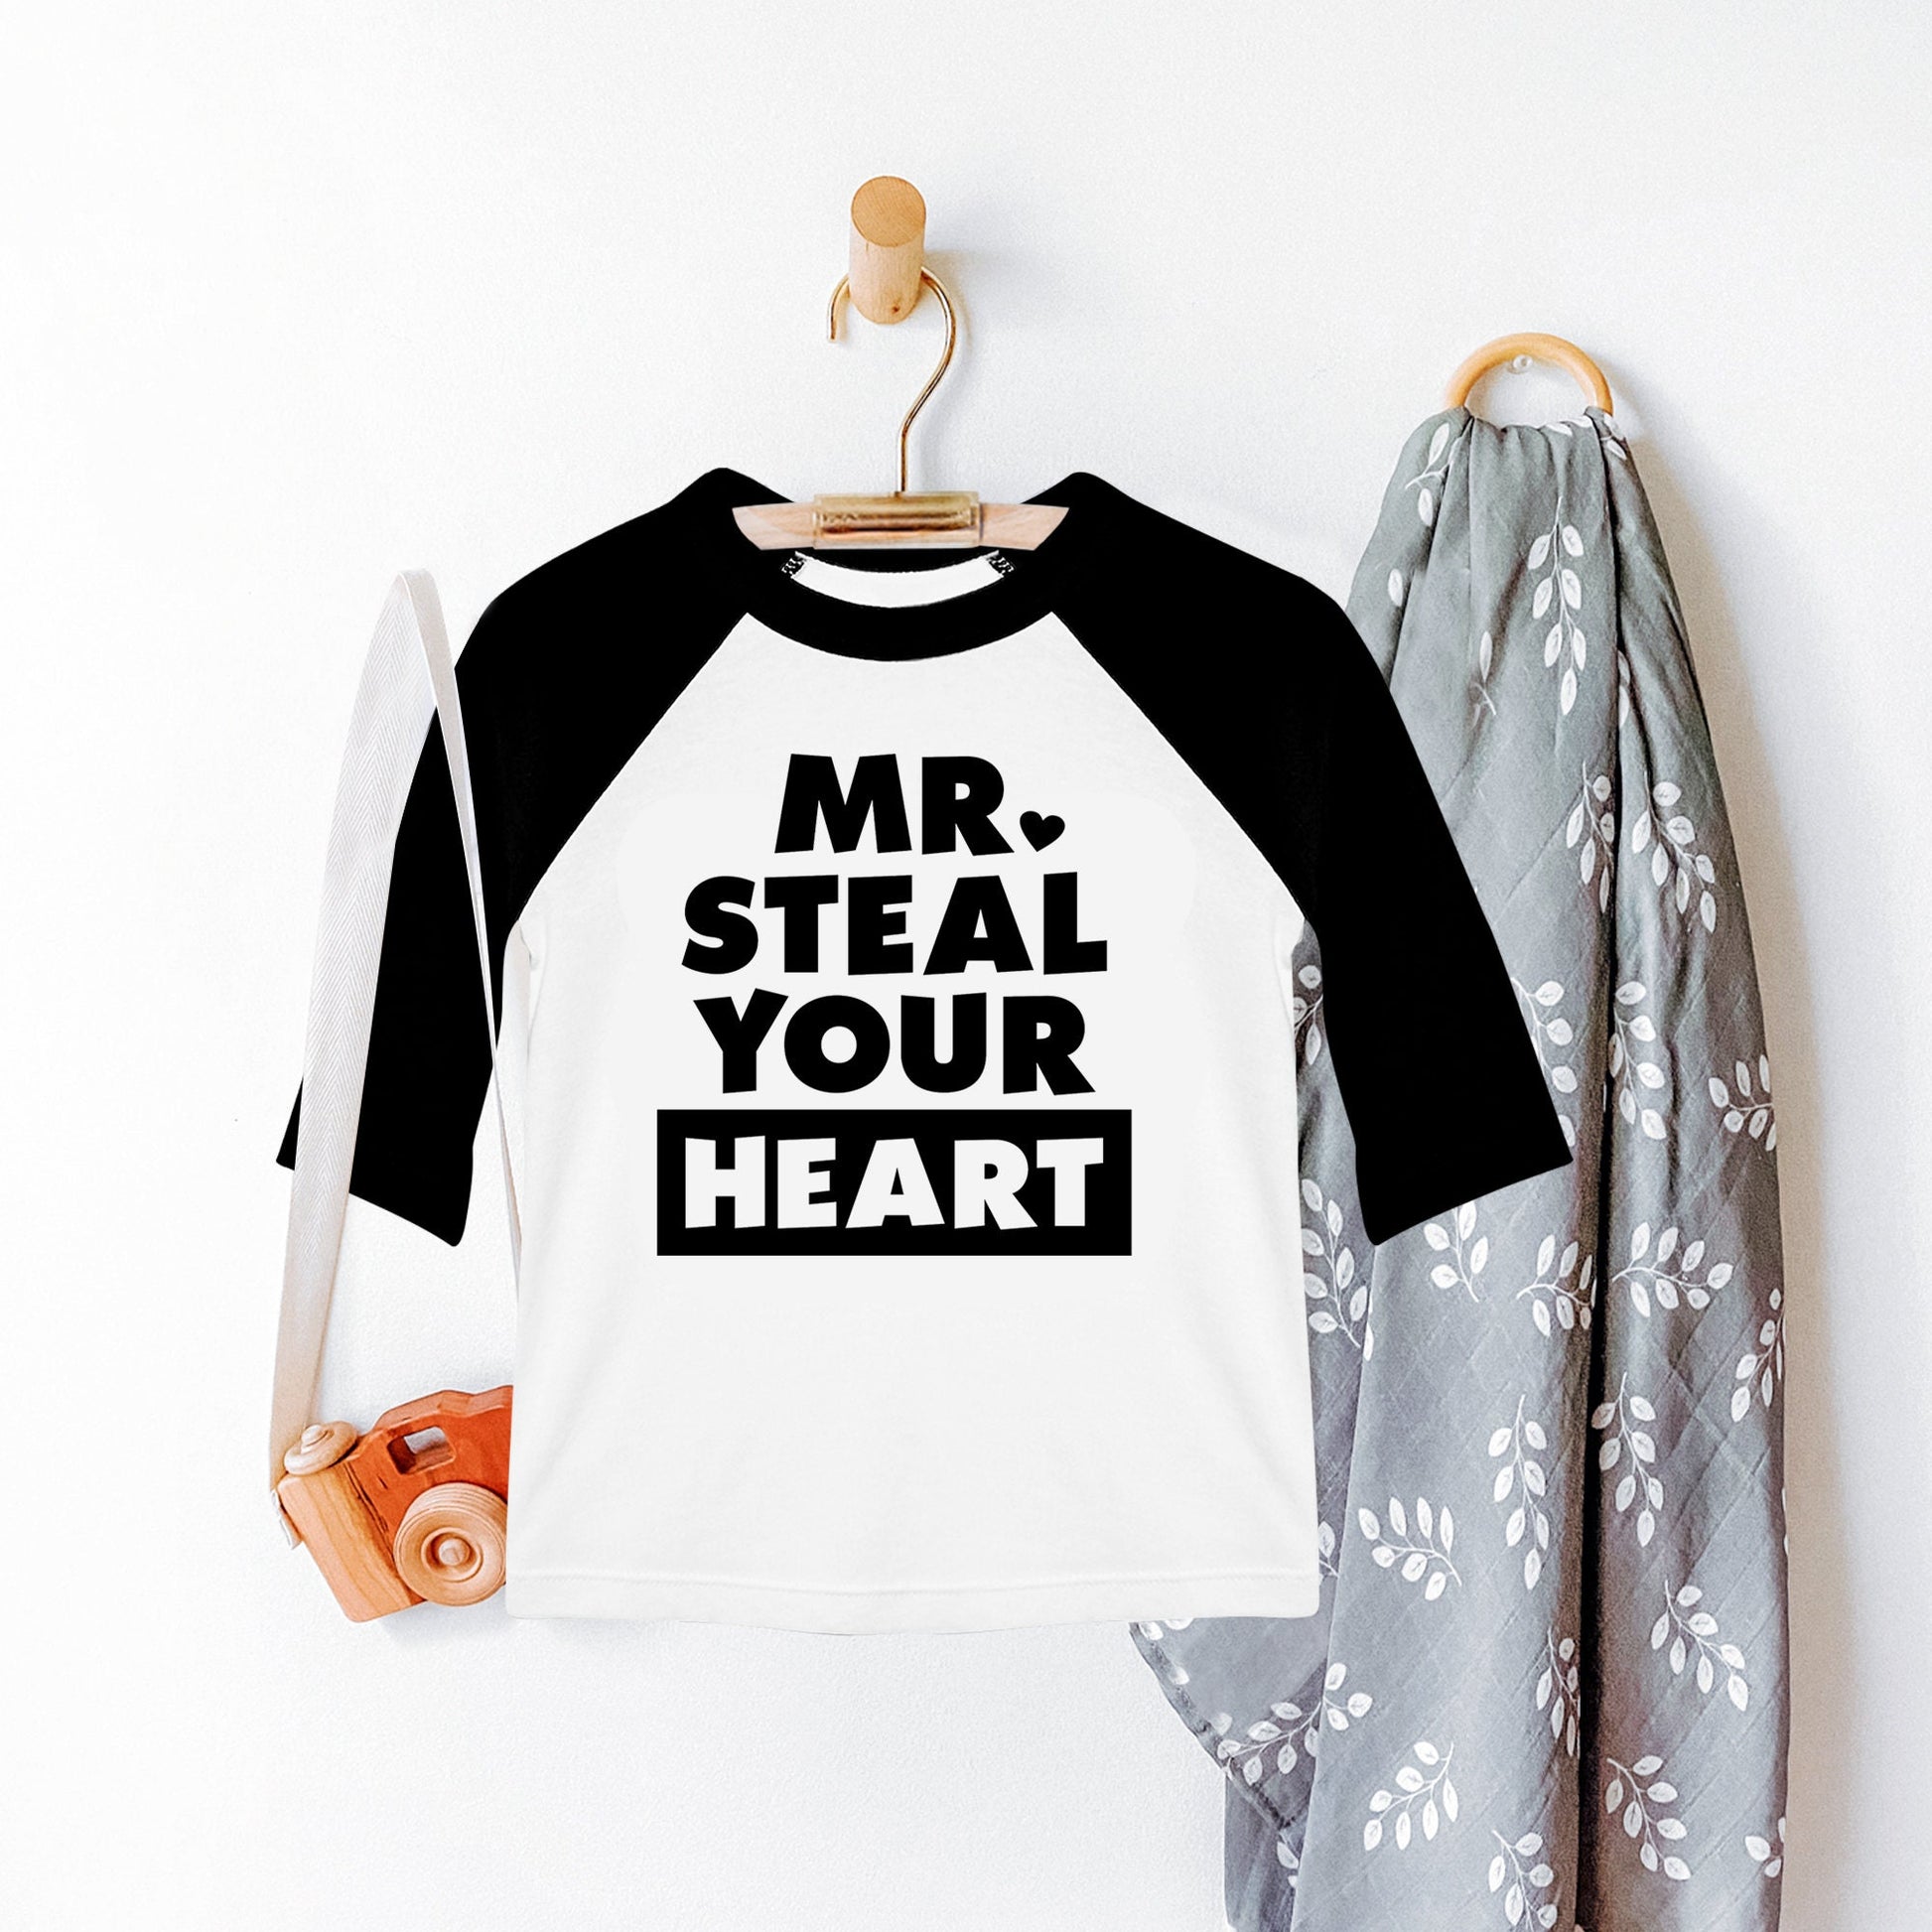 Mr Steal Your Heart, Kids Shirt, Children Shirt, Youth Shirt, Toddler Shirt, Kids Shirts, Children Shirts